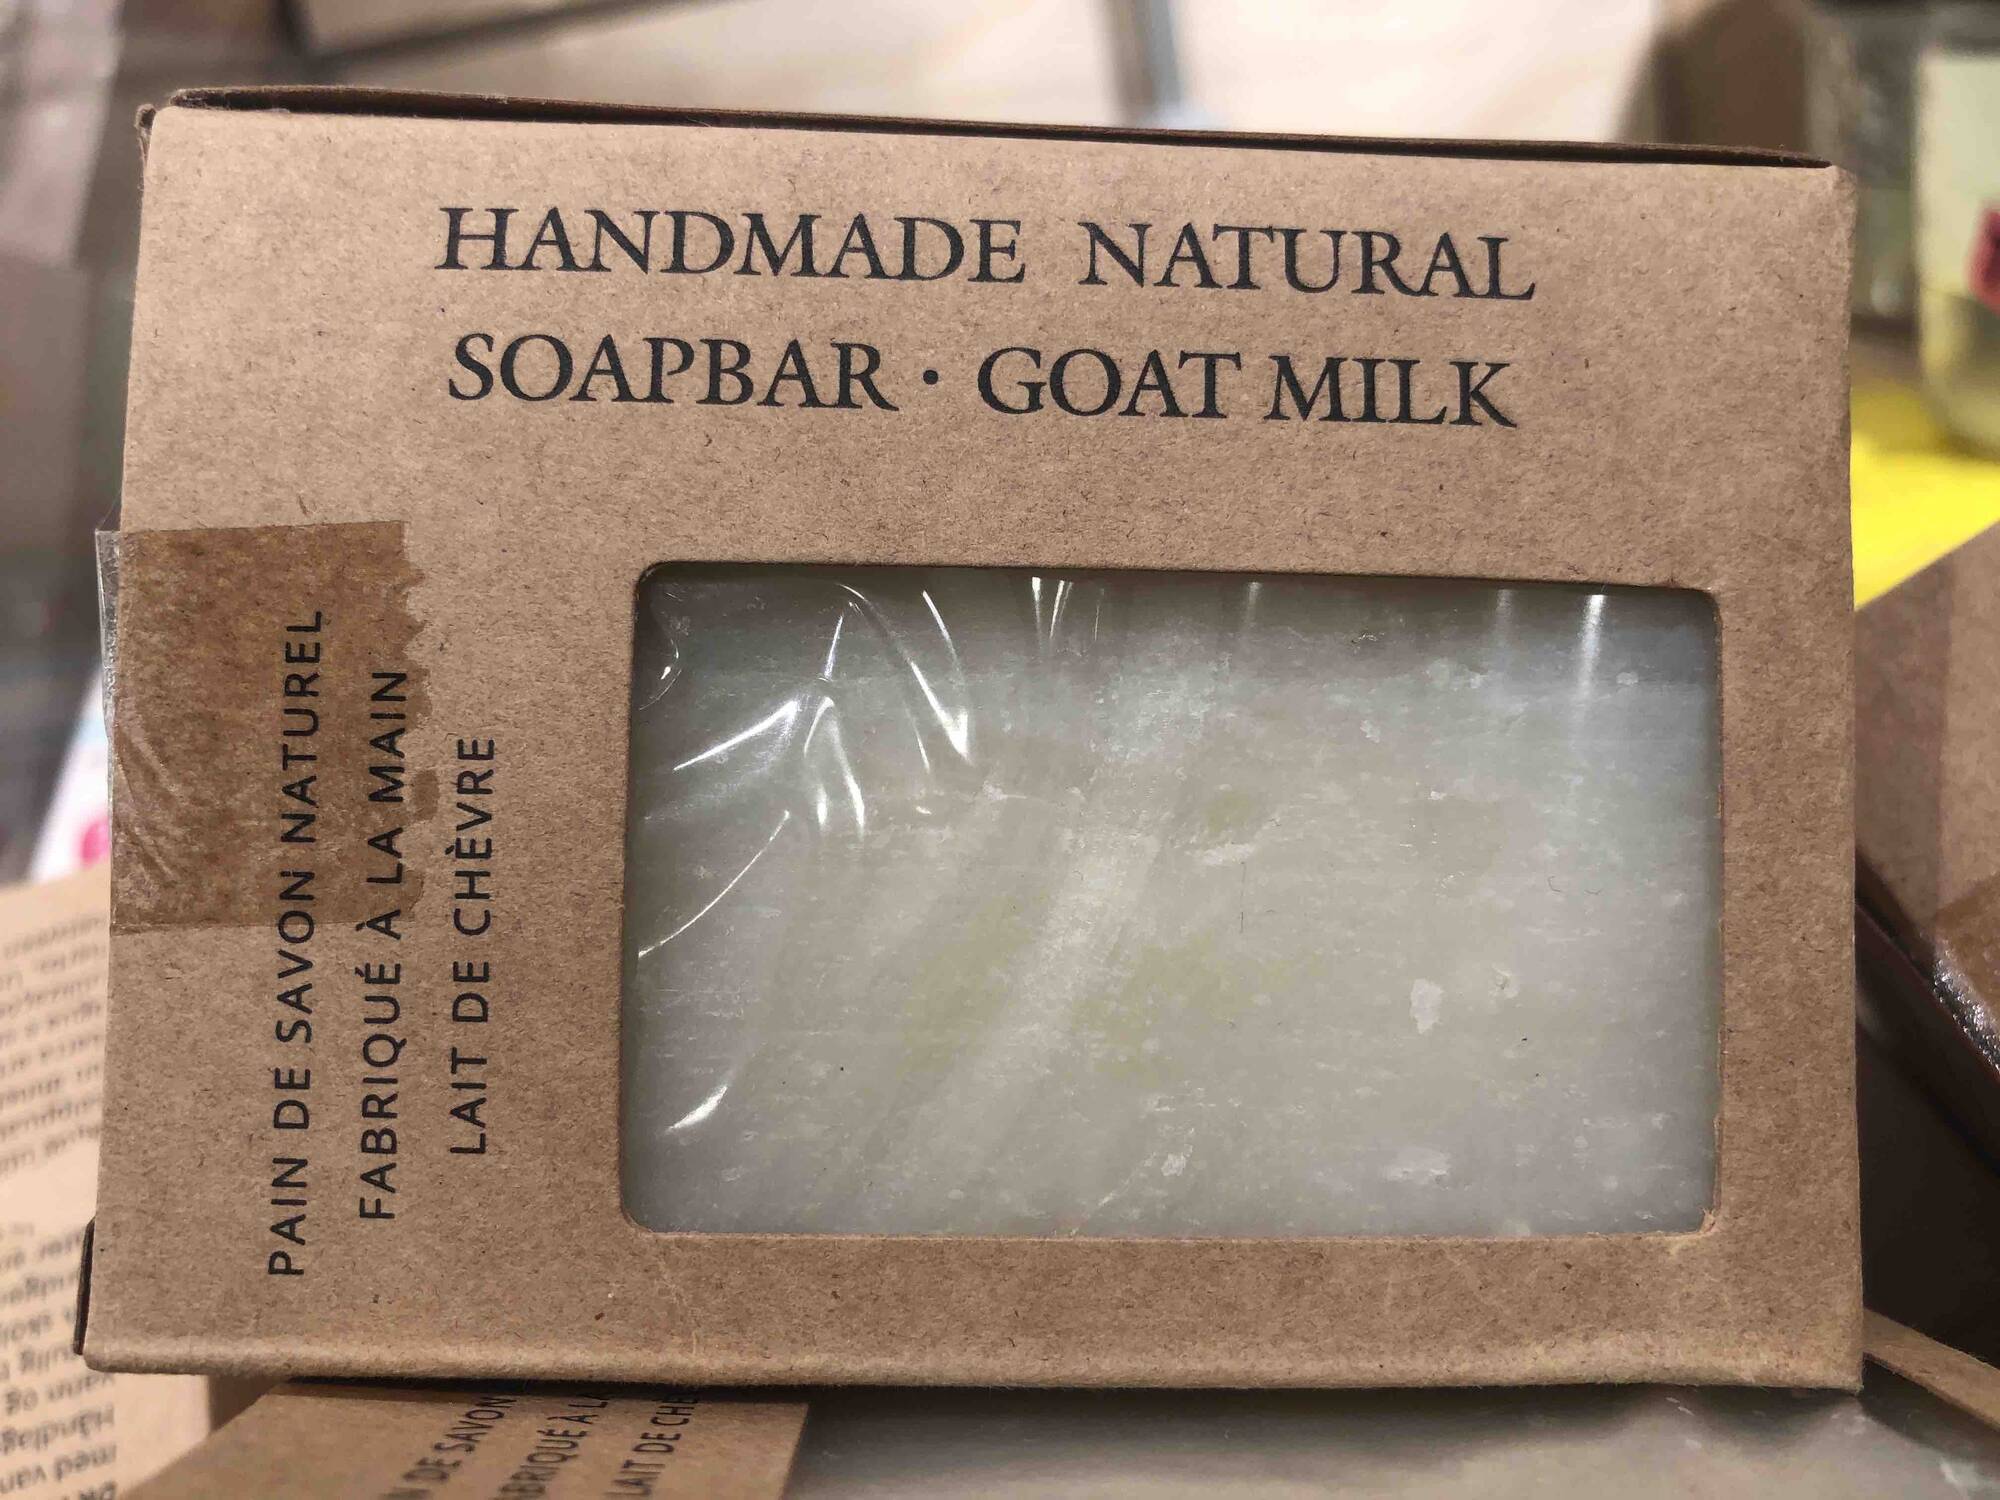 HANDMADE NATURAL - Pain de savon naturel